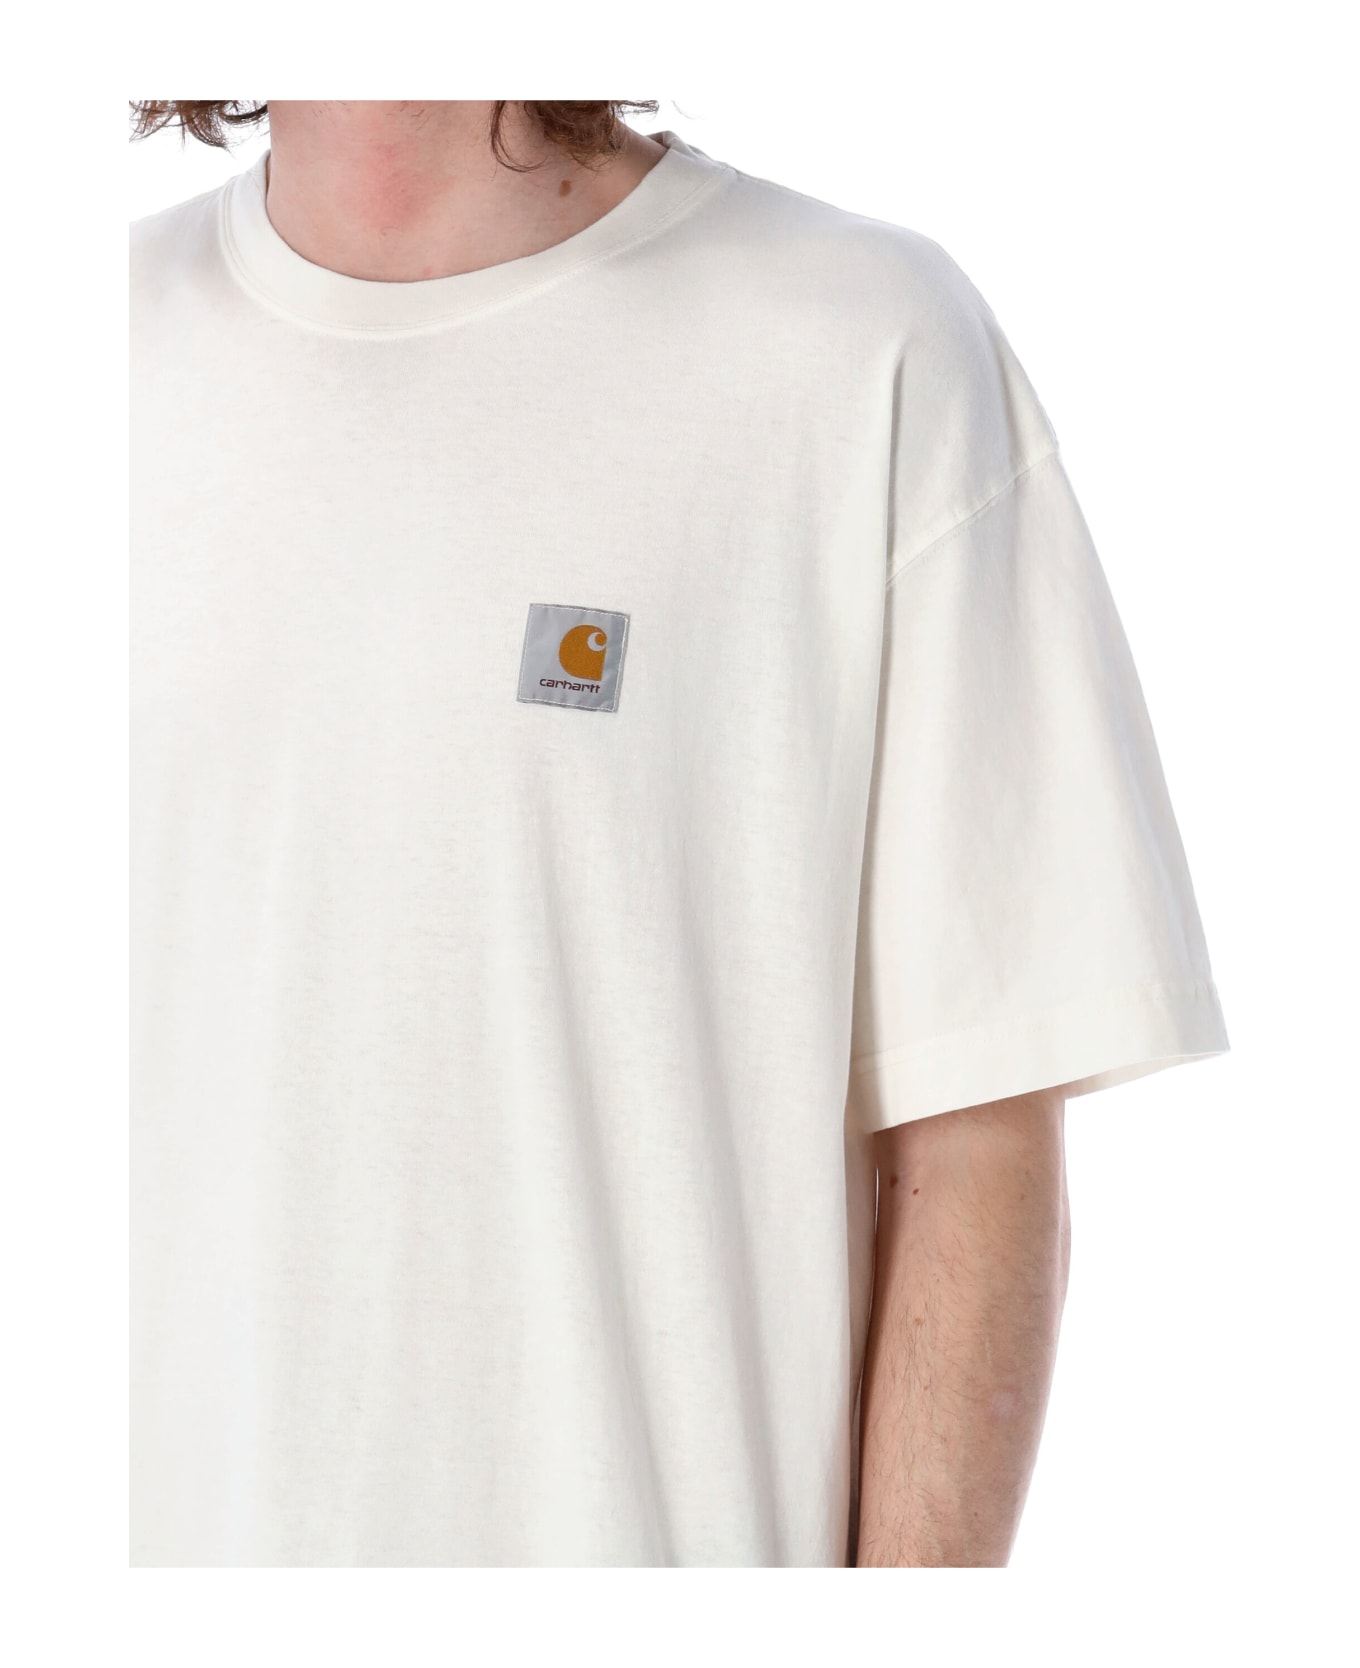 Carhartt S/s Nelson T-shirt - WAX